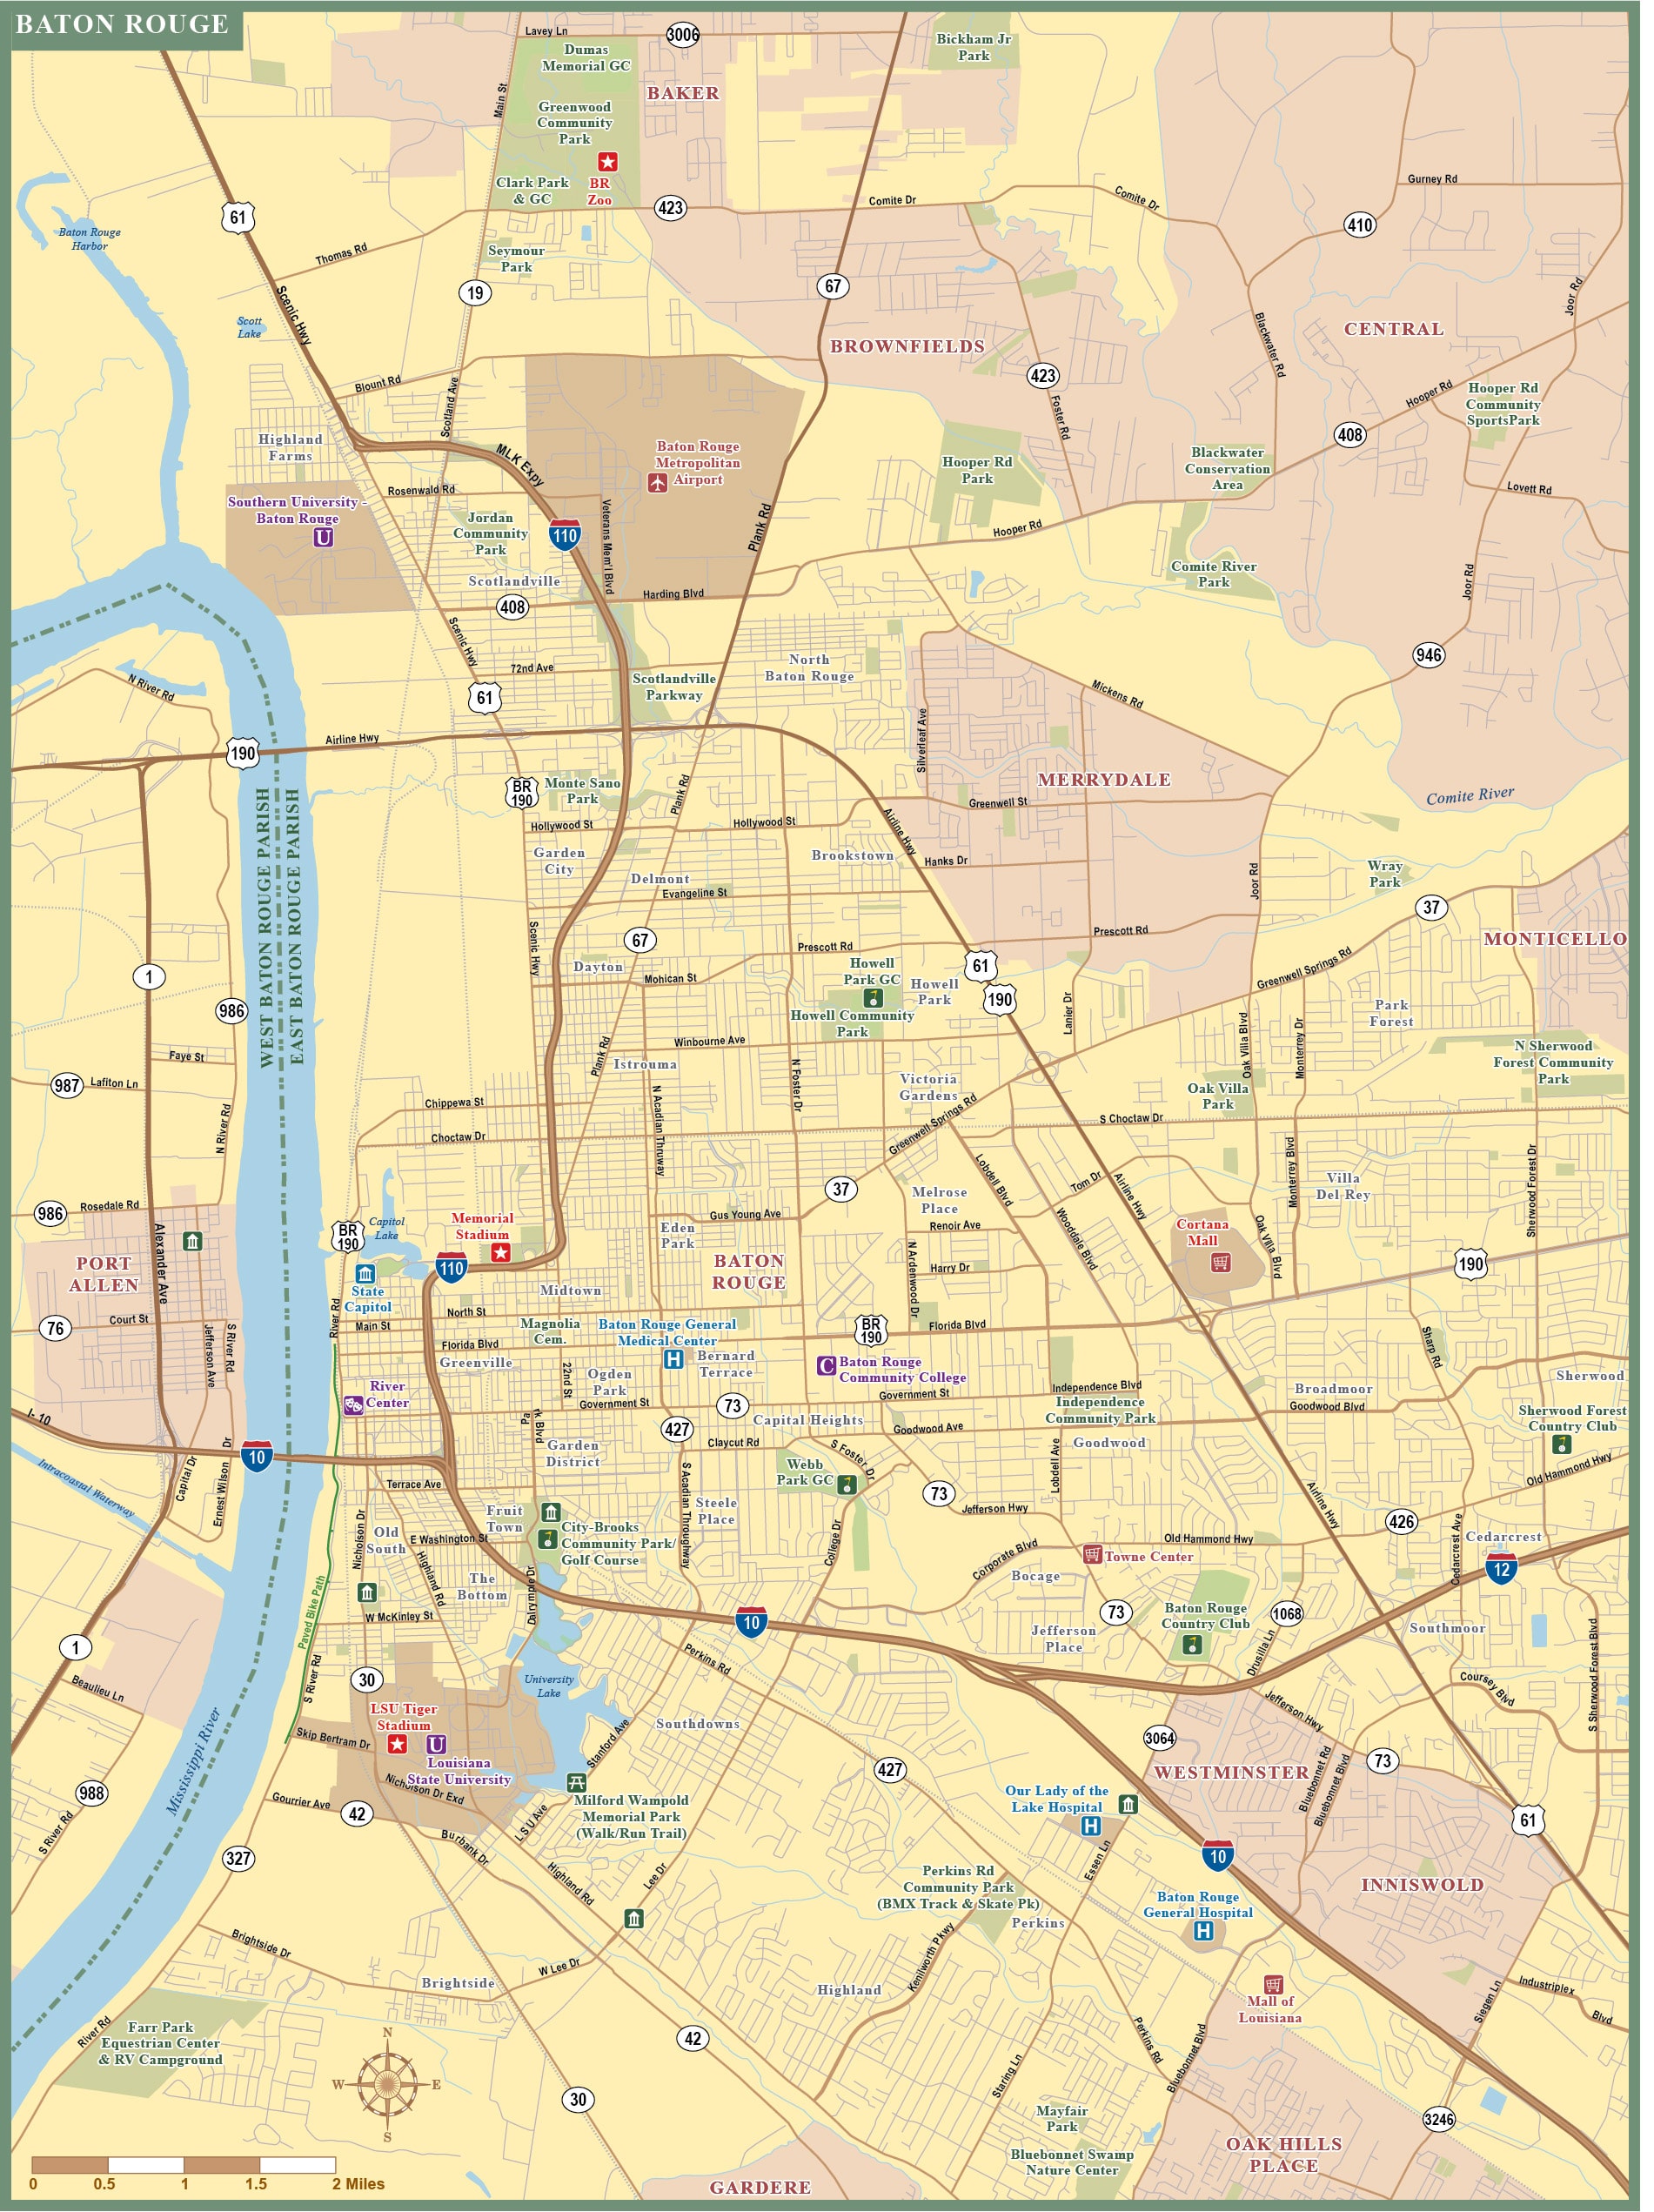 Louisiana Map, Digital Vector